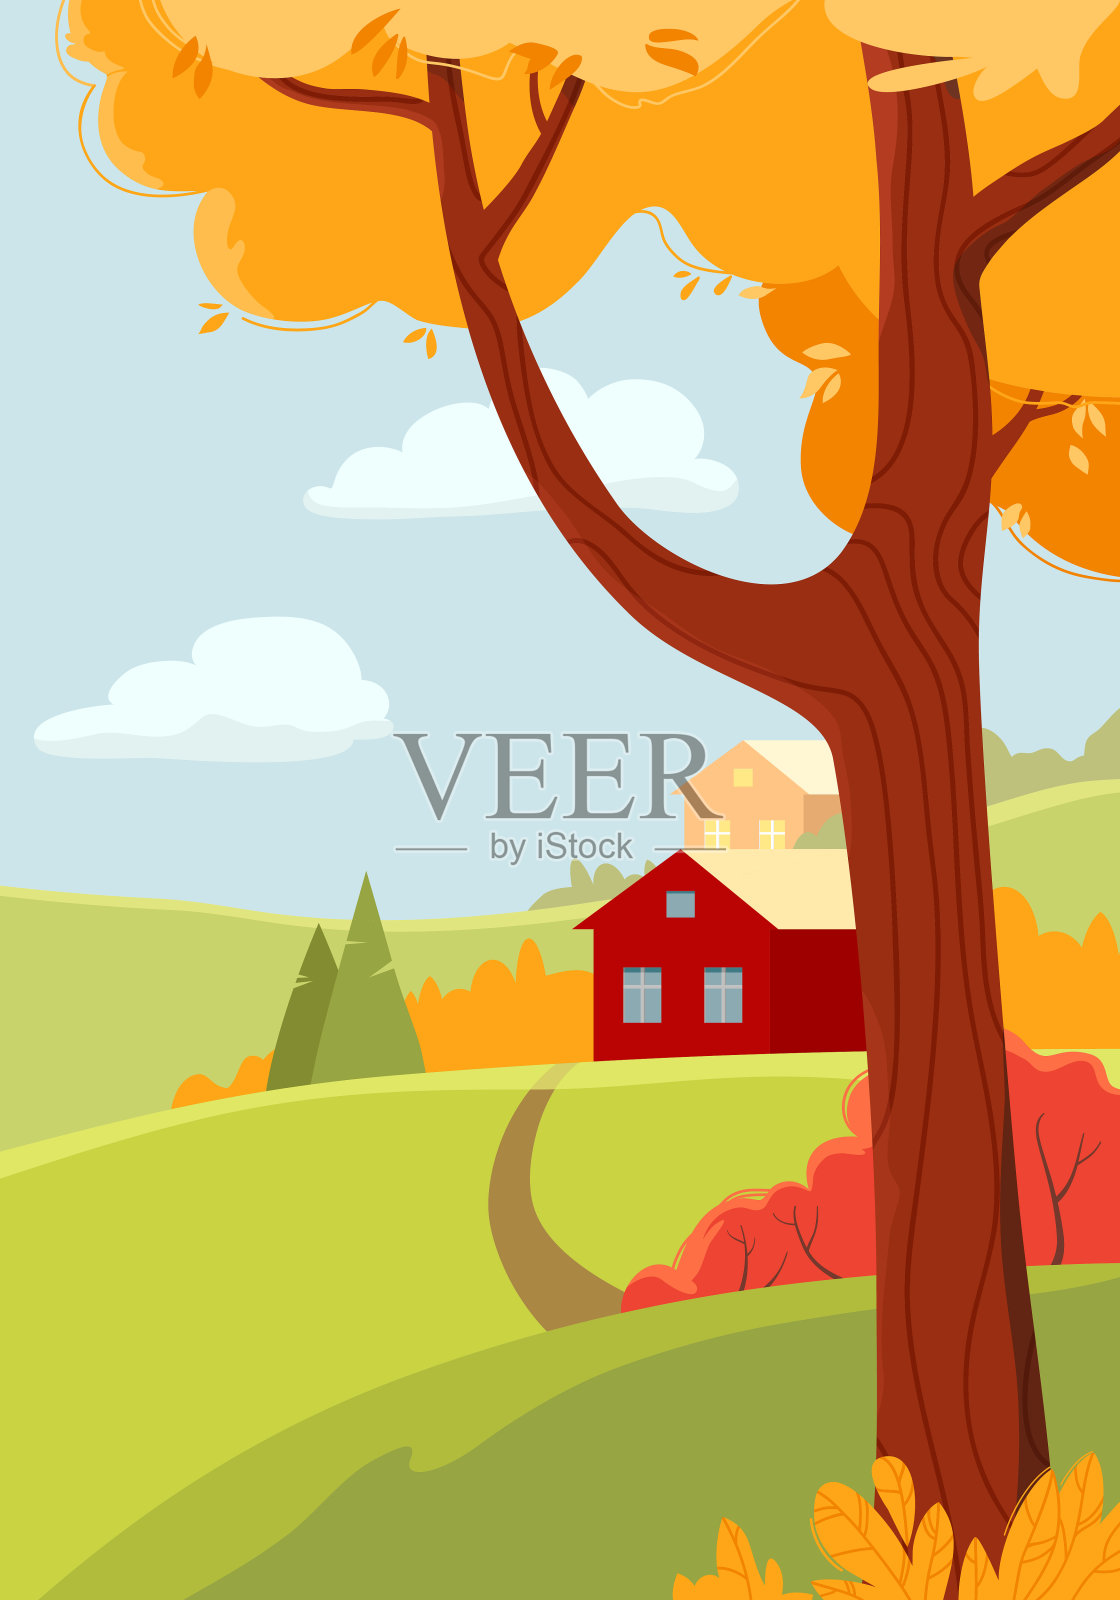 秋天的风景与村庄和五颜六色的树。清晰,阳光灿烂的日子。设计元素图片